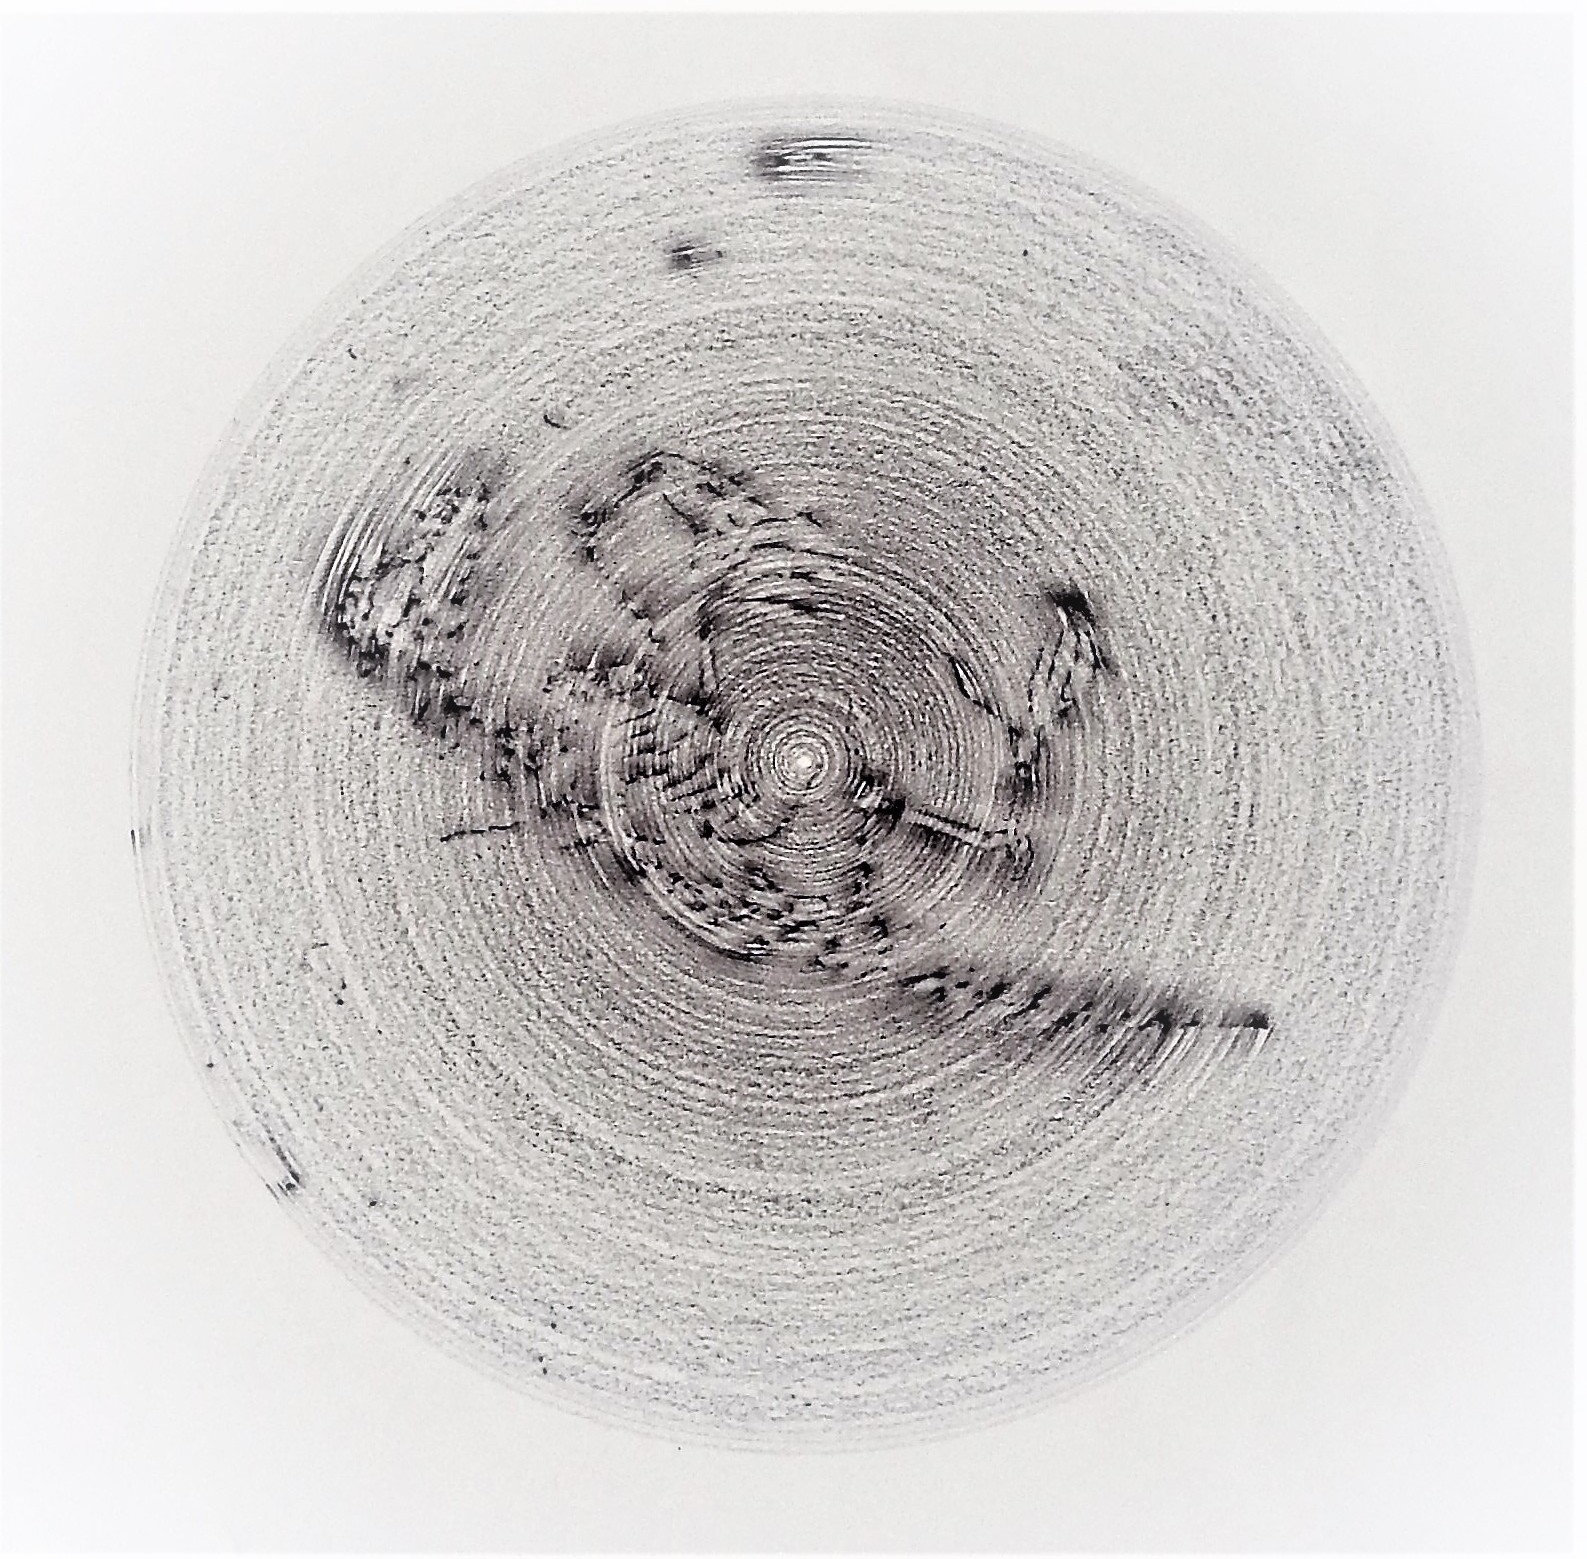  ענבר פרים, ללא כותרת, עפרון על נייר, 60X  60 ס"מ , 2018